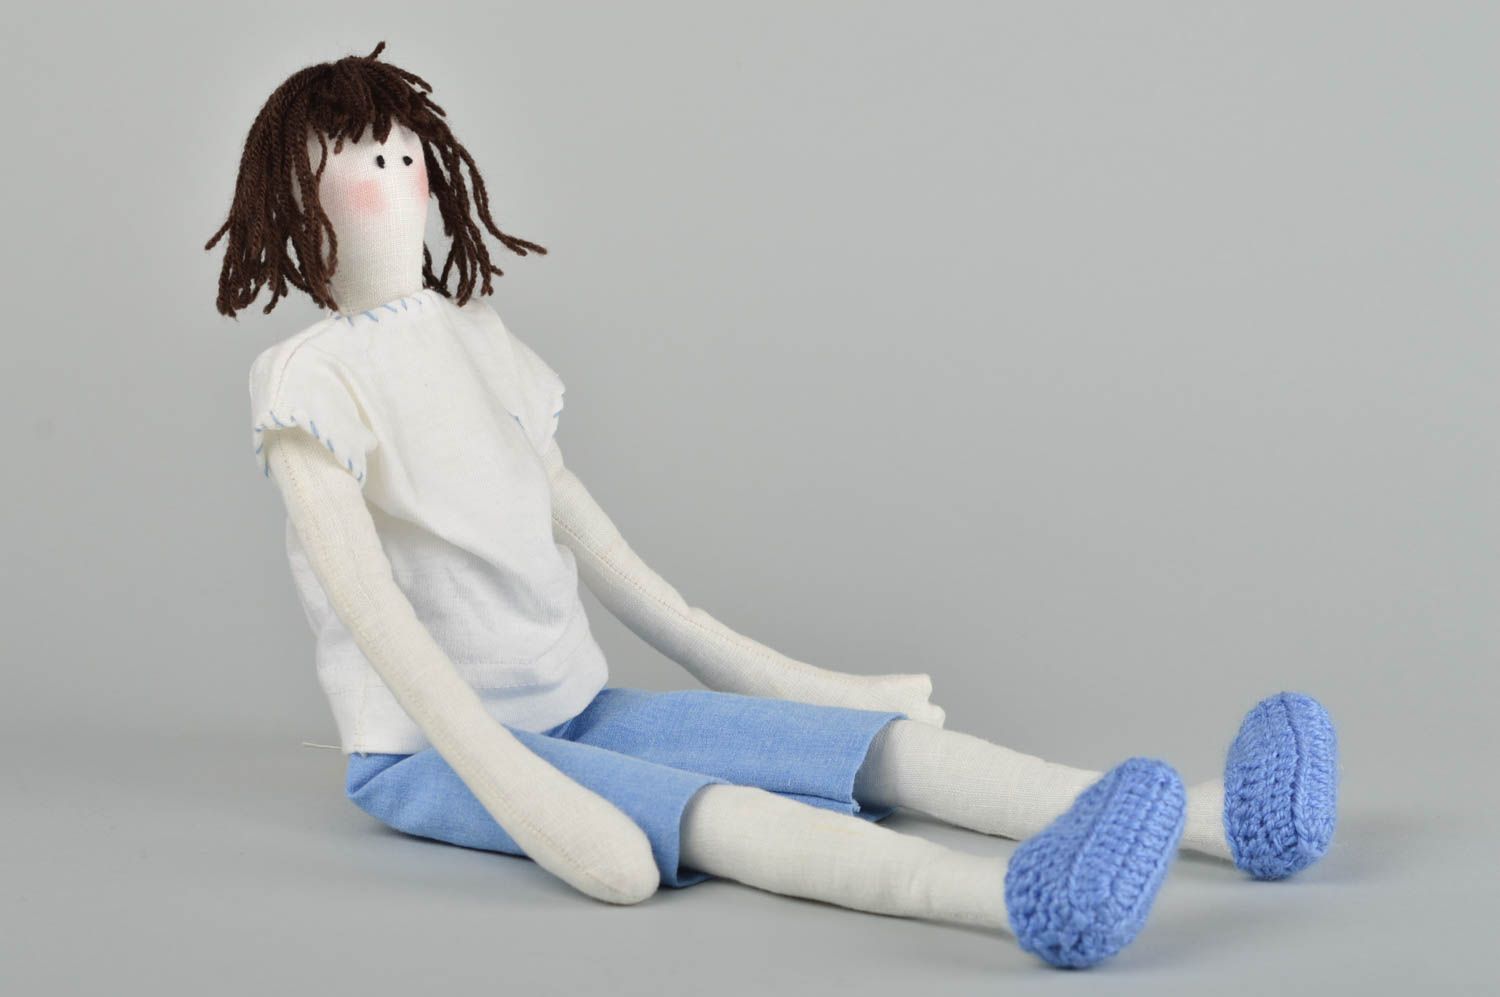 Handmade doll designer doll for girls unusual gift for baby nursery decor photo 2